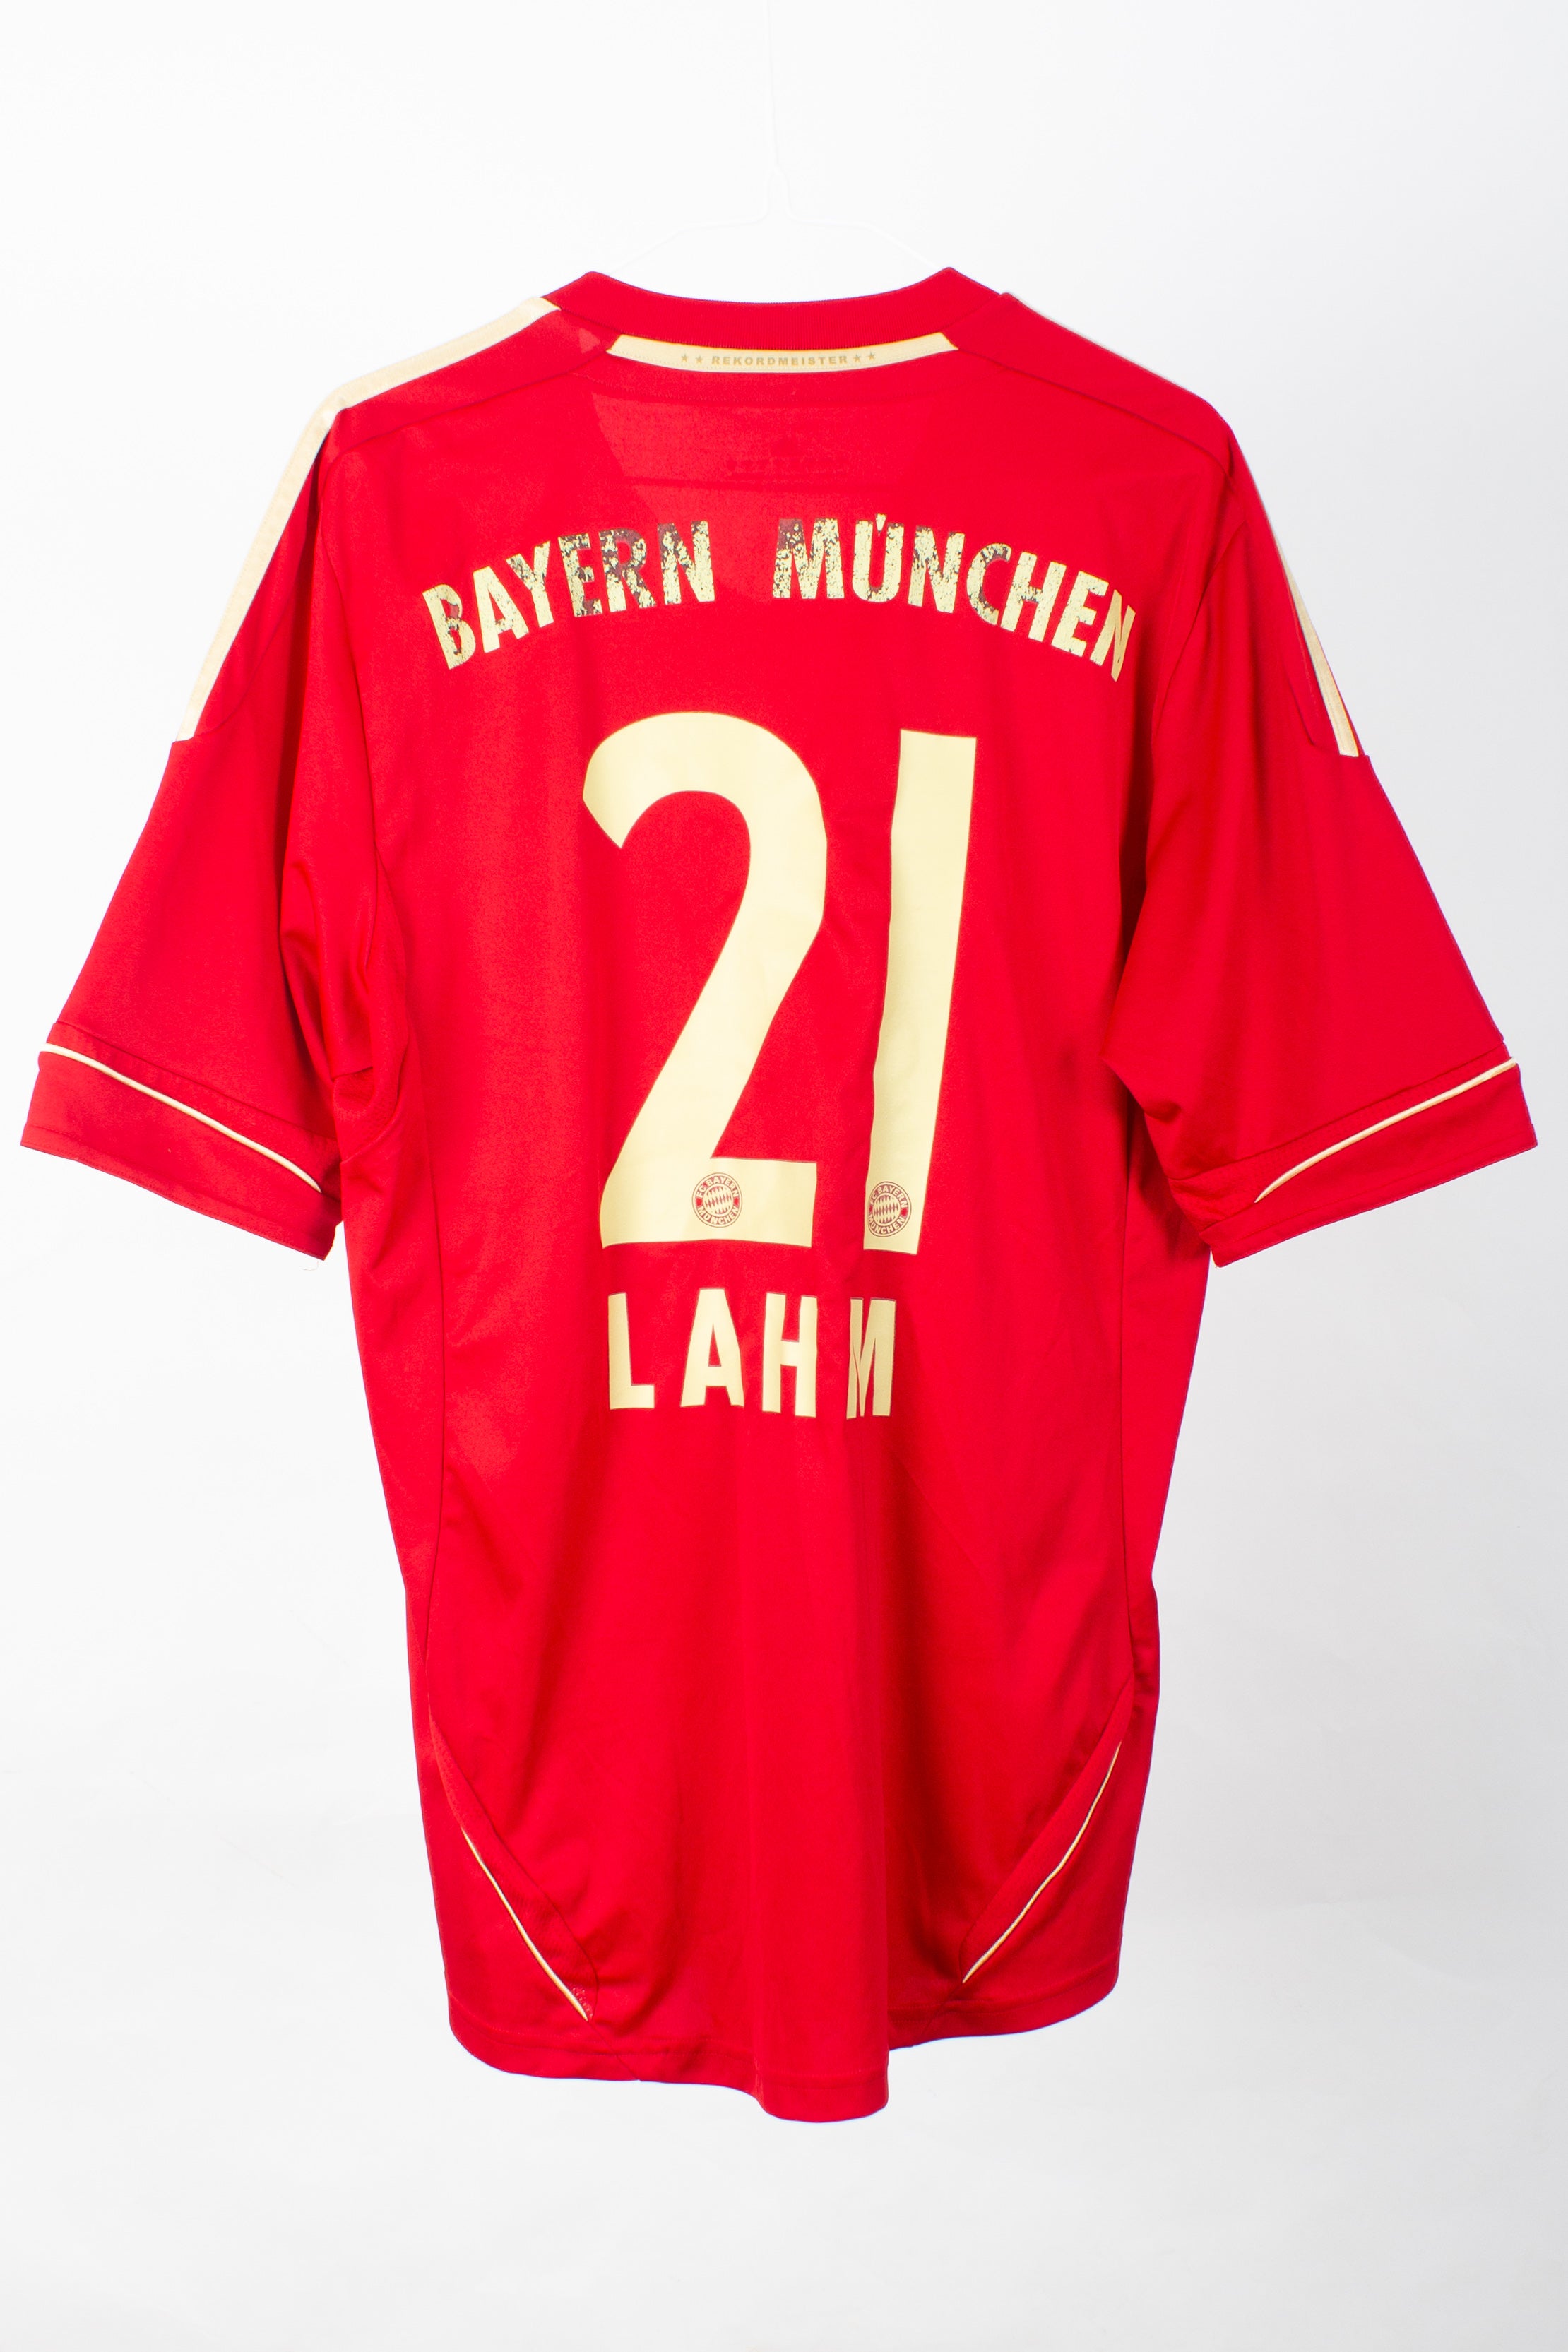 Bayern Munich 2011/13 Home Shirt (Lahm #21) (M)